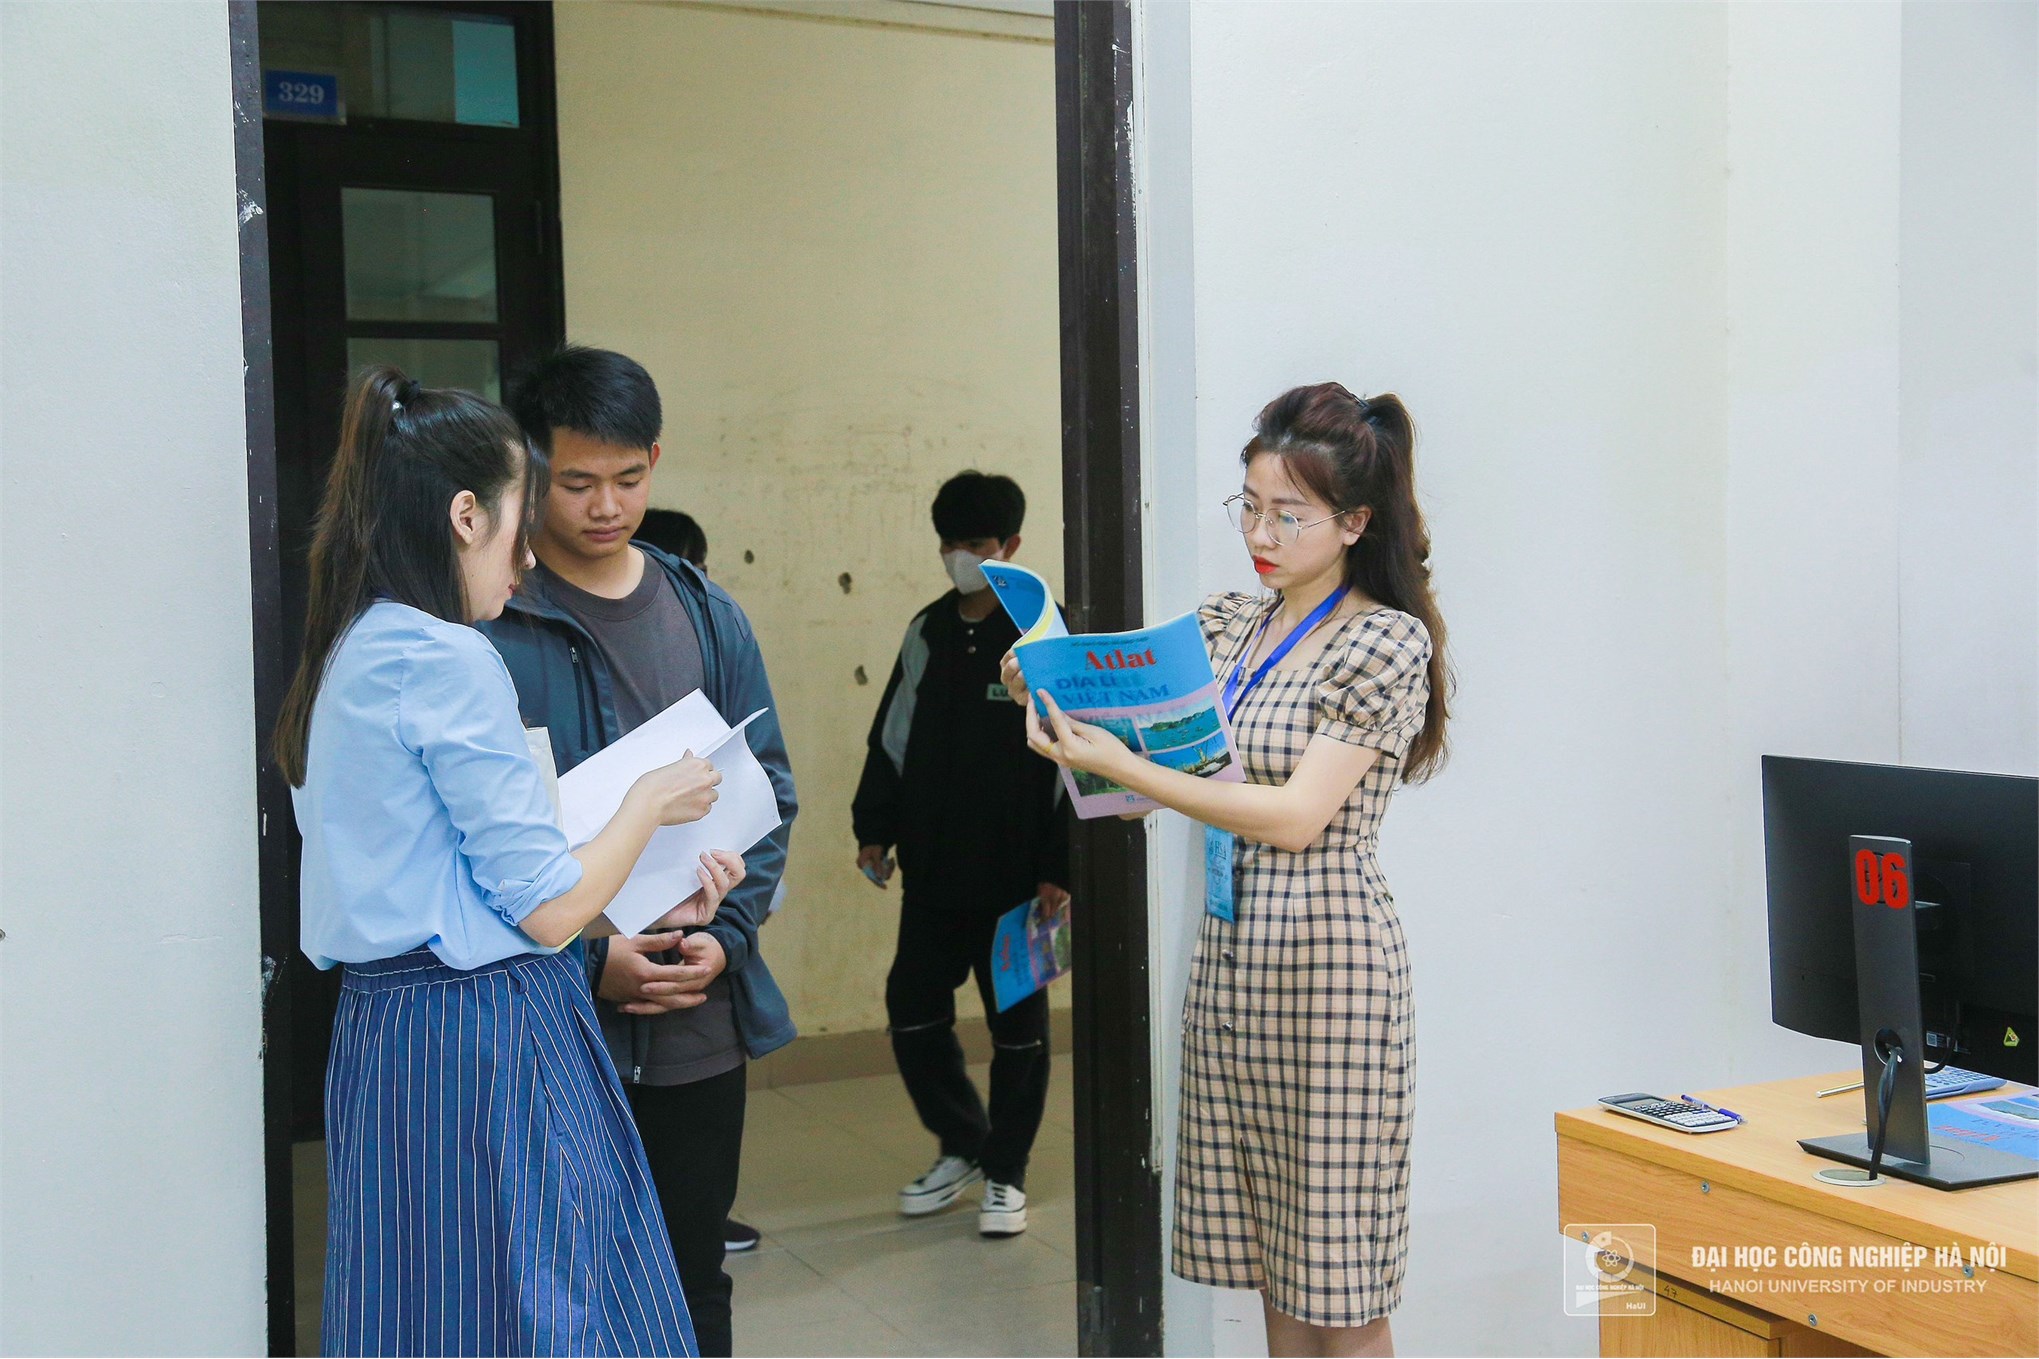 Đại học Công nghiệp Hà Nội phối hợp tổ chức thi đánh giá năng lực học sinh Trung học phổ thông